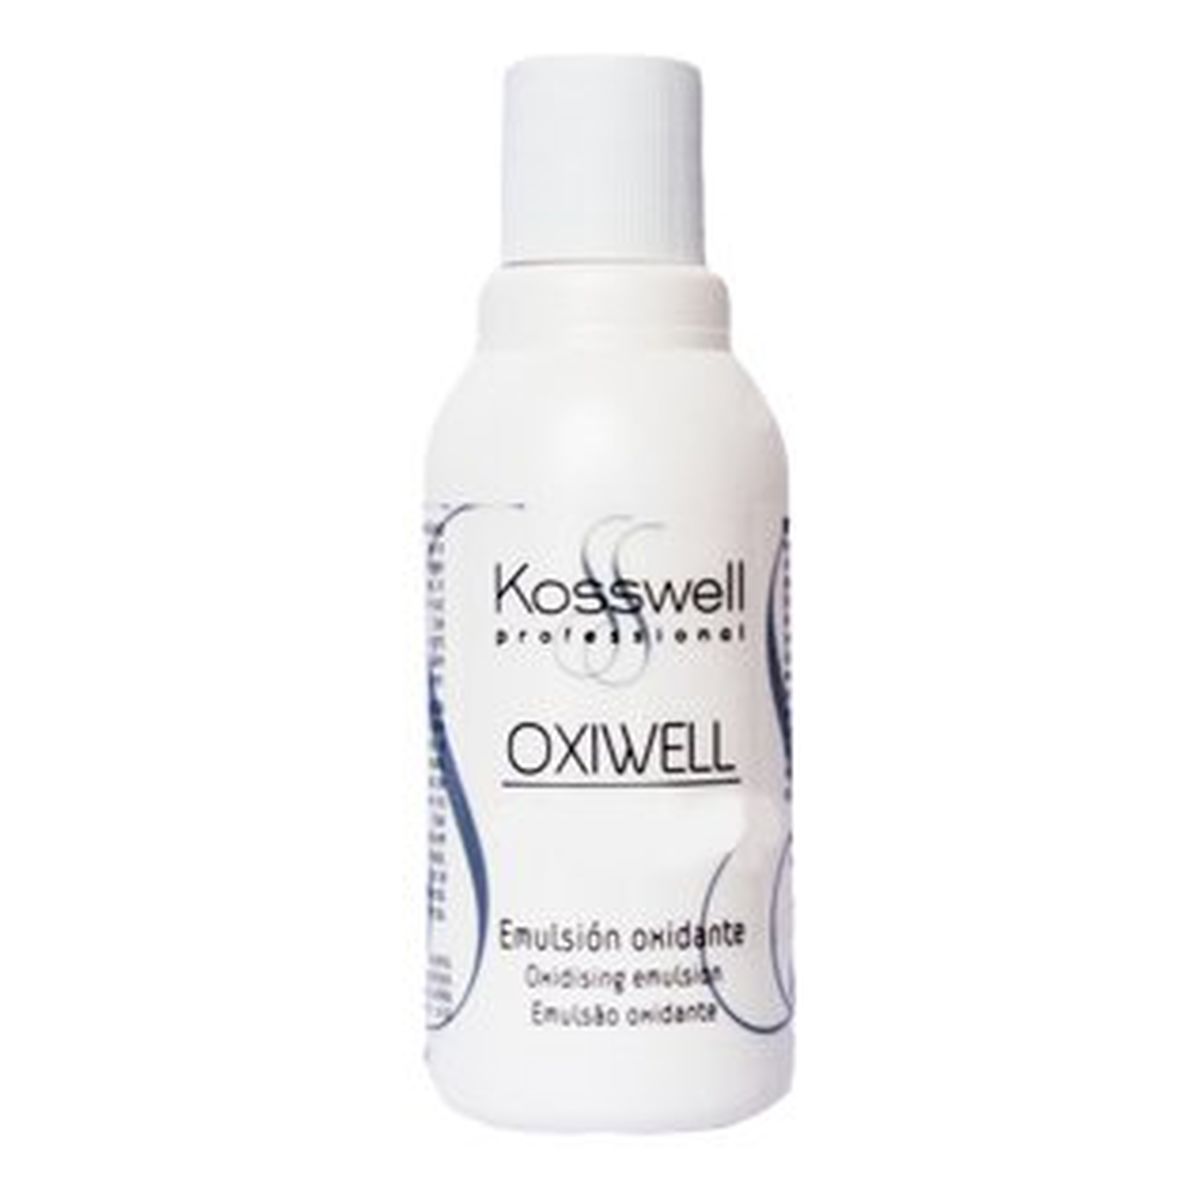 Kosswell Oxiwell 6% Woda utleniona 75ml